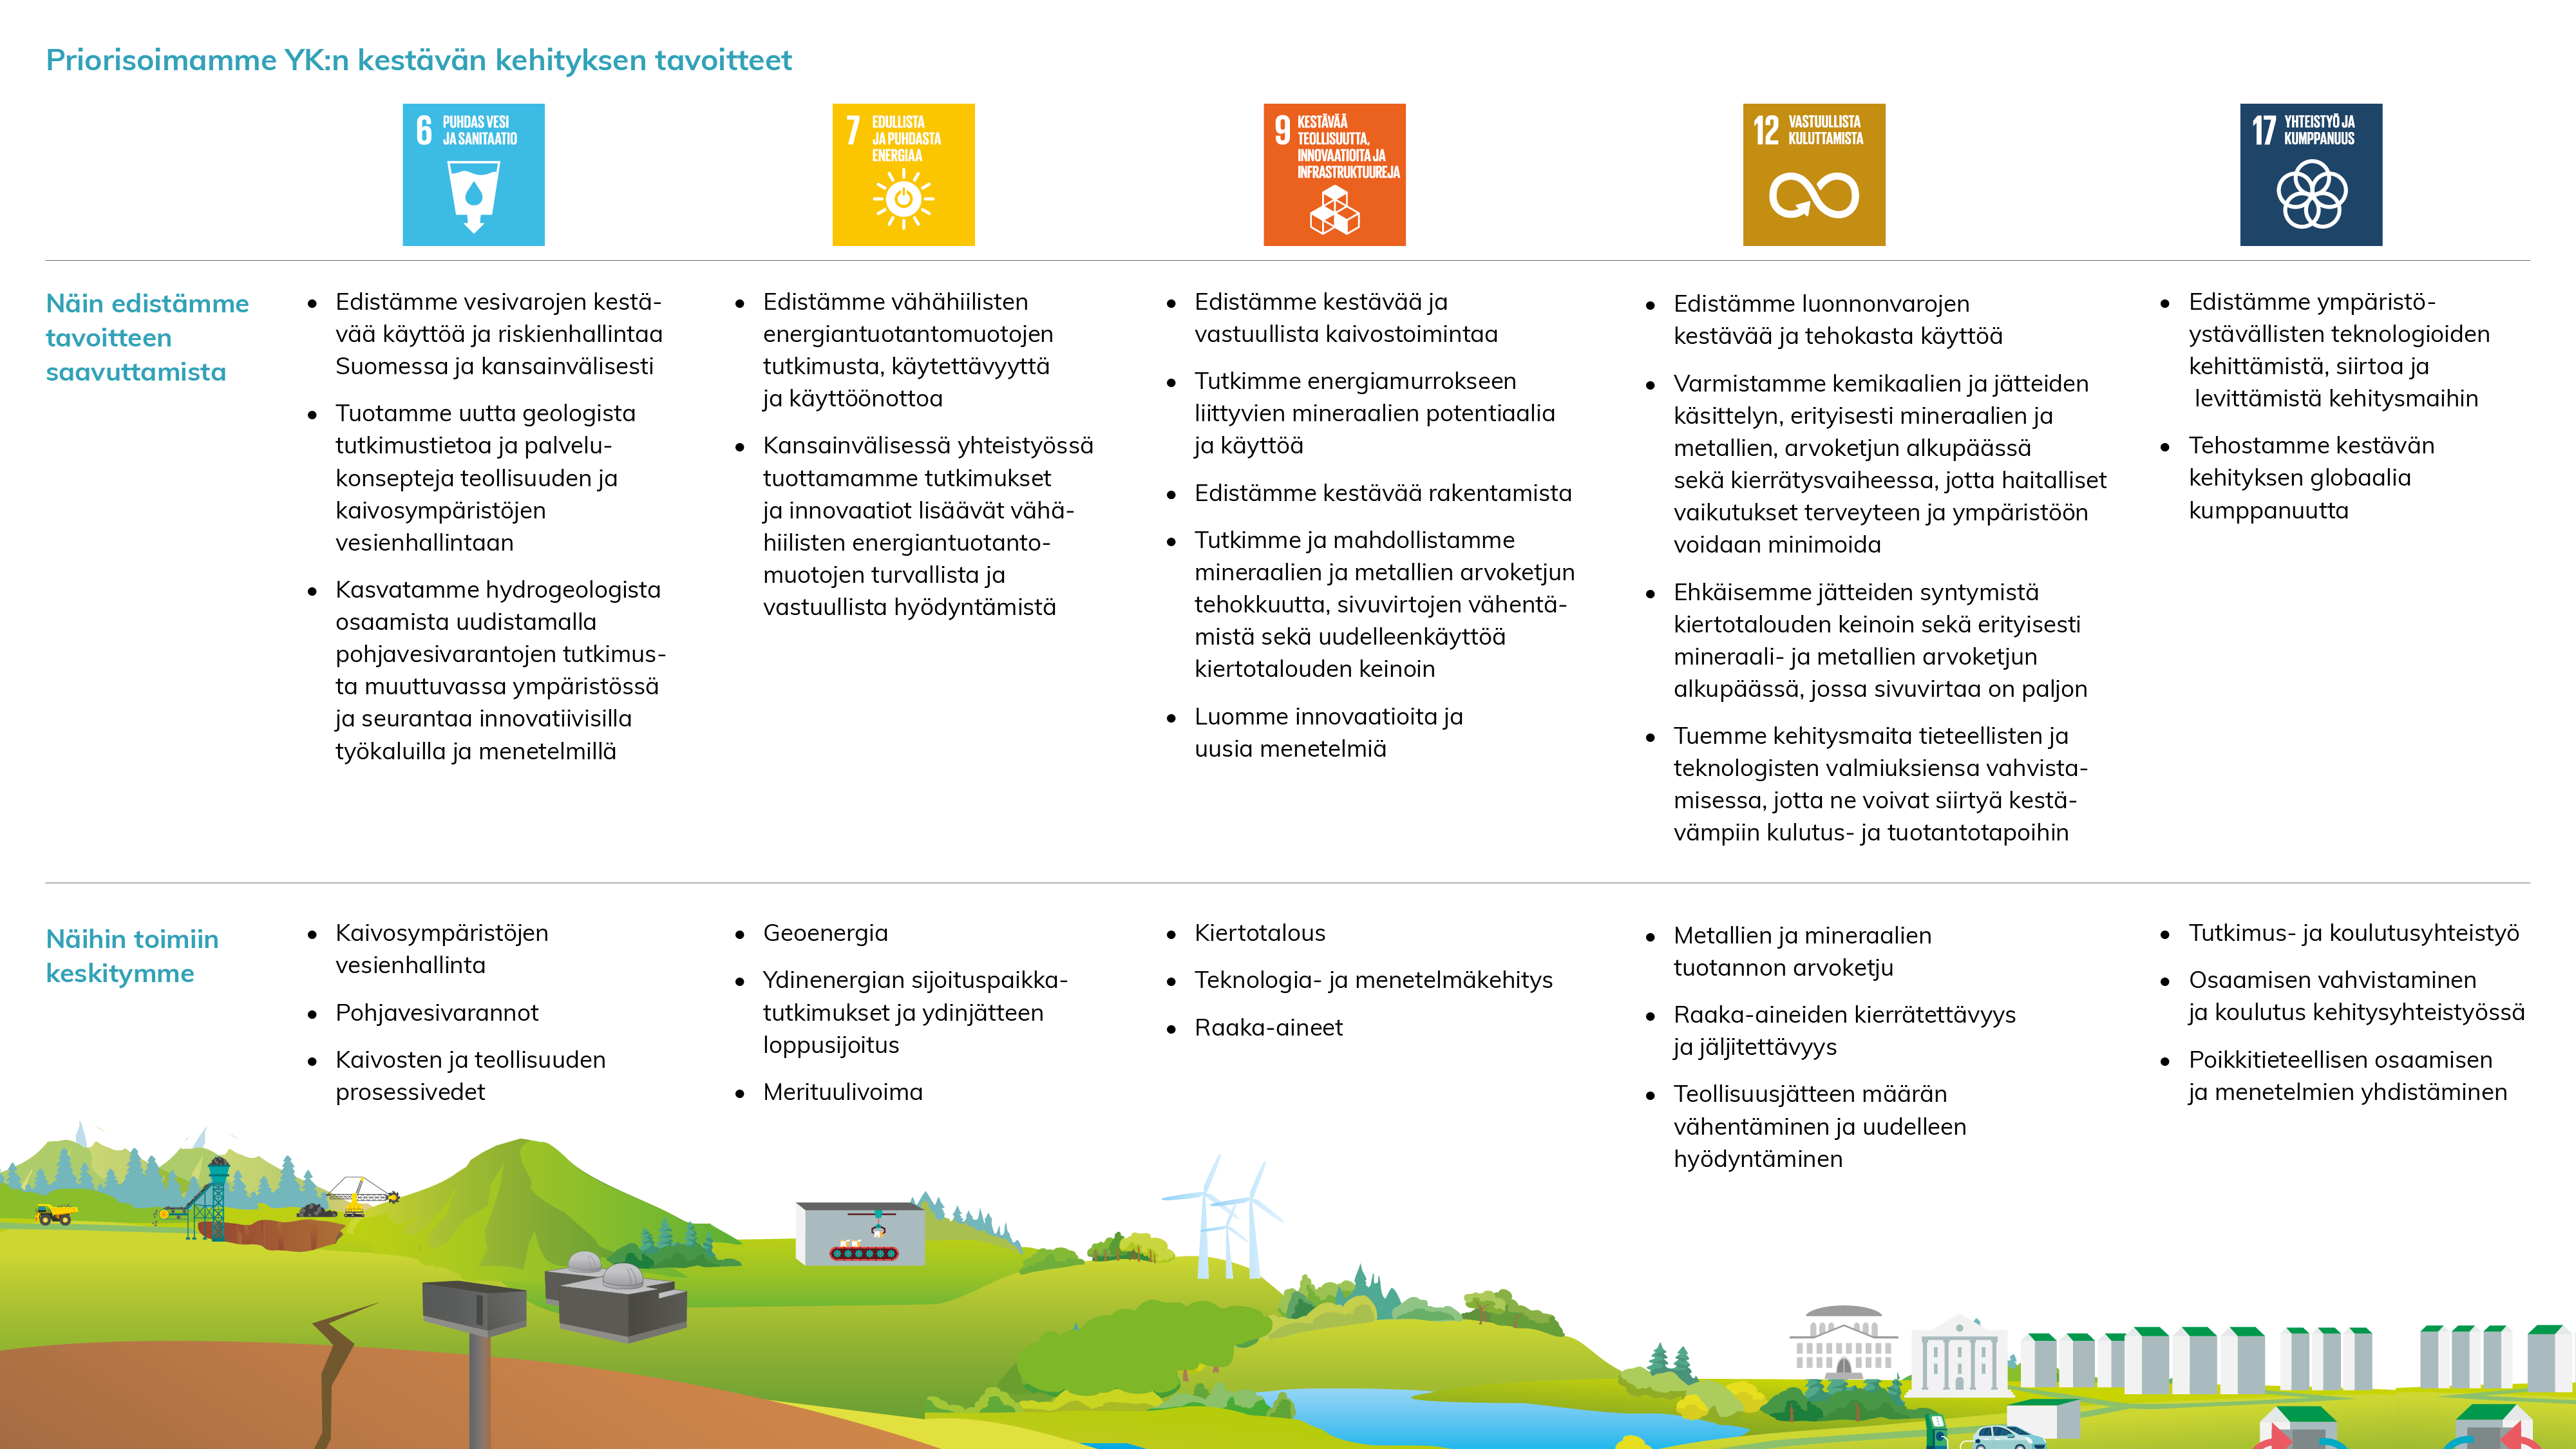 Priorisoimamme viisi YK:n kestävän kehityksen tavoitetta ja niille määritetyt strategiset tavoitteet. Priorisoidut tavoitteet ovat: puhdas vesi ja sanitaatio; edullista ja puhdasta energiaa; kestävää teollisuutta, innovaatioita ja infrastruktuuria; vastuullista kuluttamista; sekä yhteistyö ja kumppanuus.